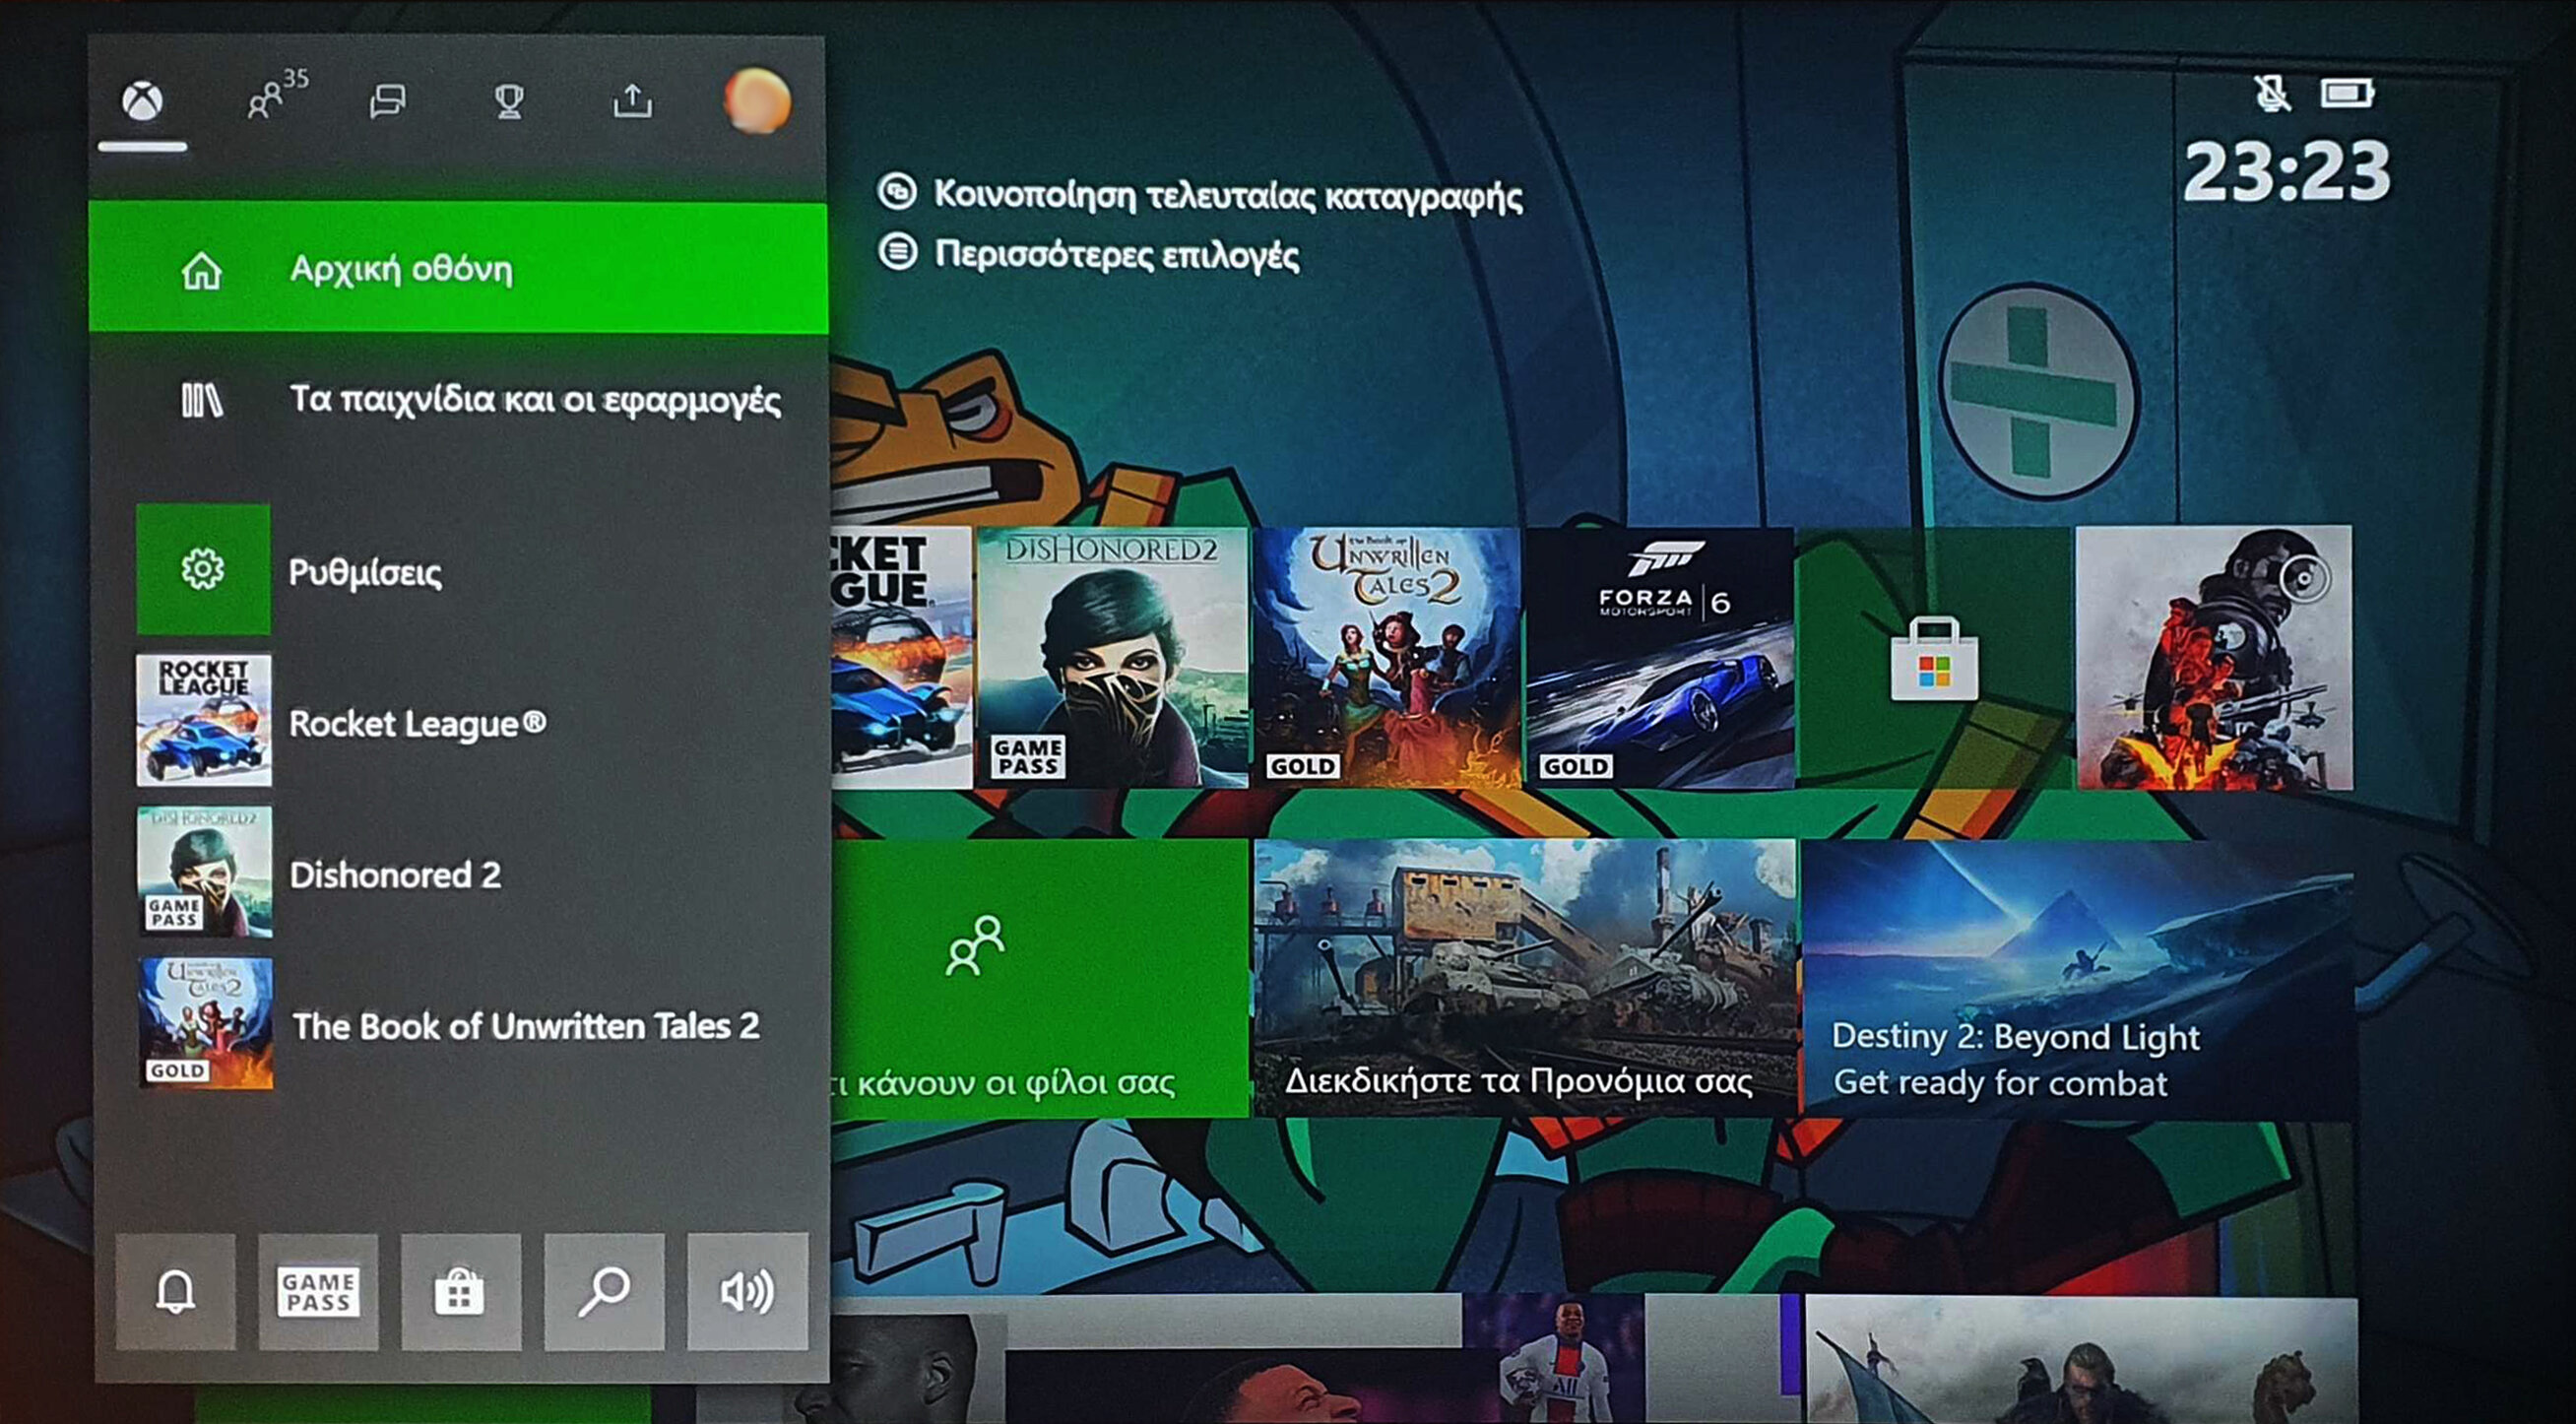 Διαθέσιμη από σήμερα η ελληνική γλώσσα στο Xbox One